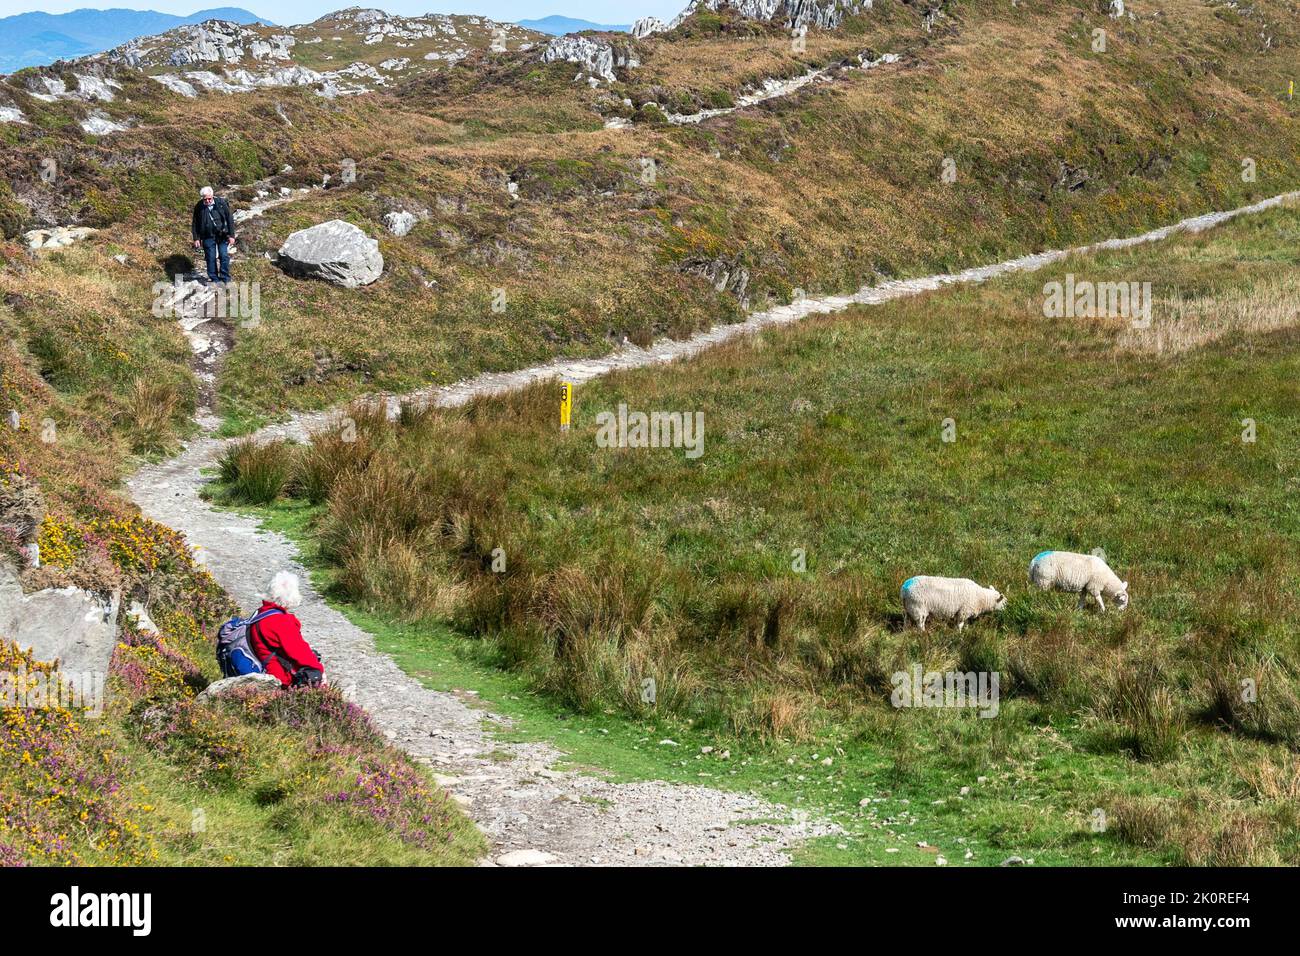 Sheep's Head, West Cork, Irland. 13. September 2022. Der malerische Sheep's Head war heute an einem sonnigen, aber luftigen Tag mit Touristen beschäftigt. Met Éireann hat für den Rest der Woche trockene und warme Tage prognostiziert. Quelle: AG News/Alamy Live News Stockfoto